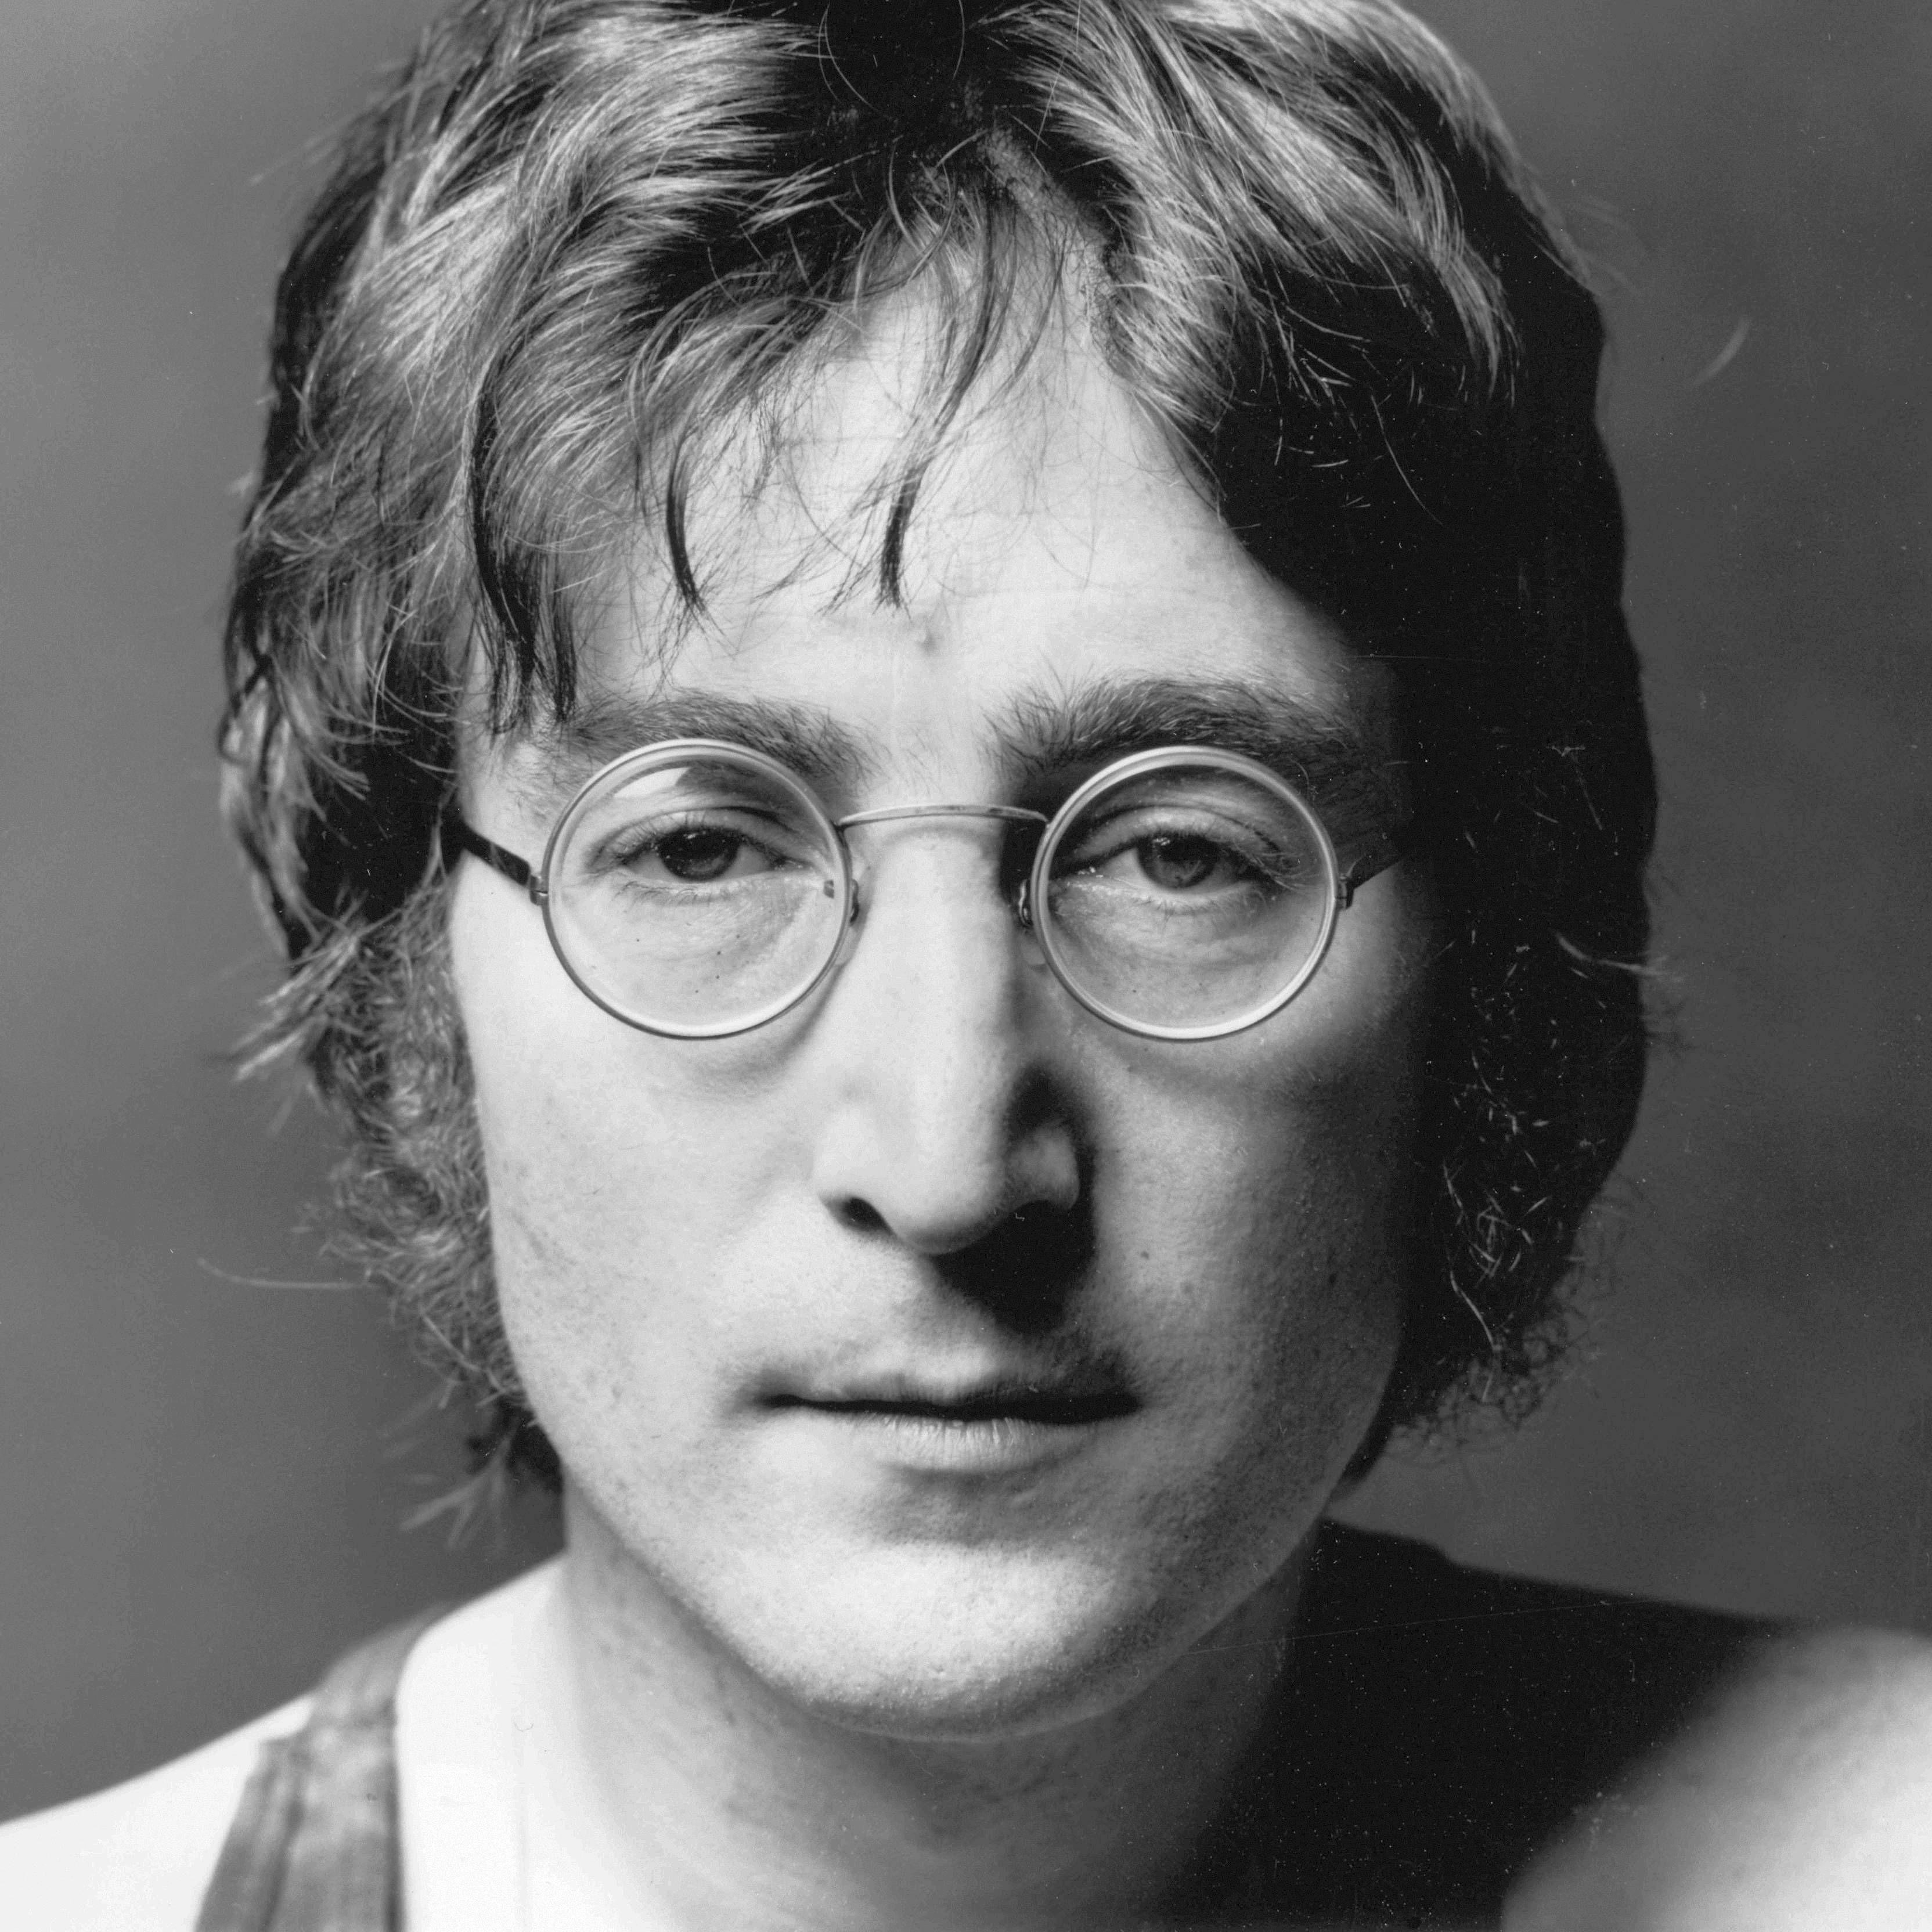 John Lennon Wallpaper | John lennon, Lennon, Wallpaper